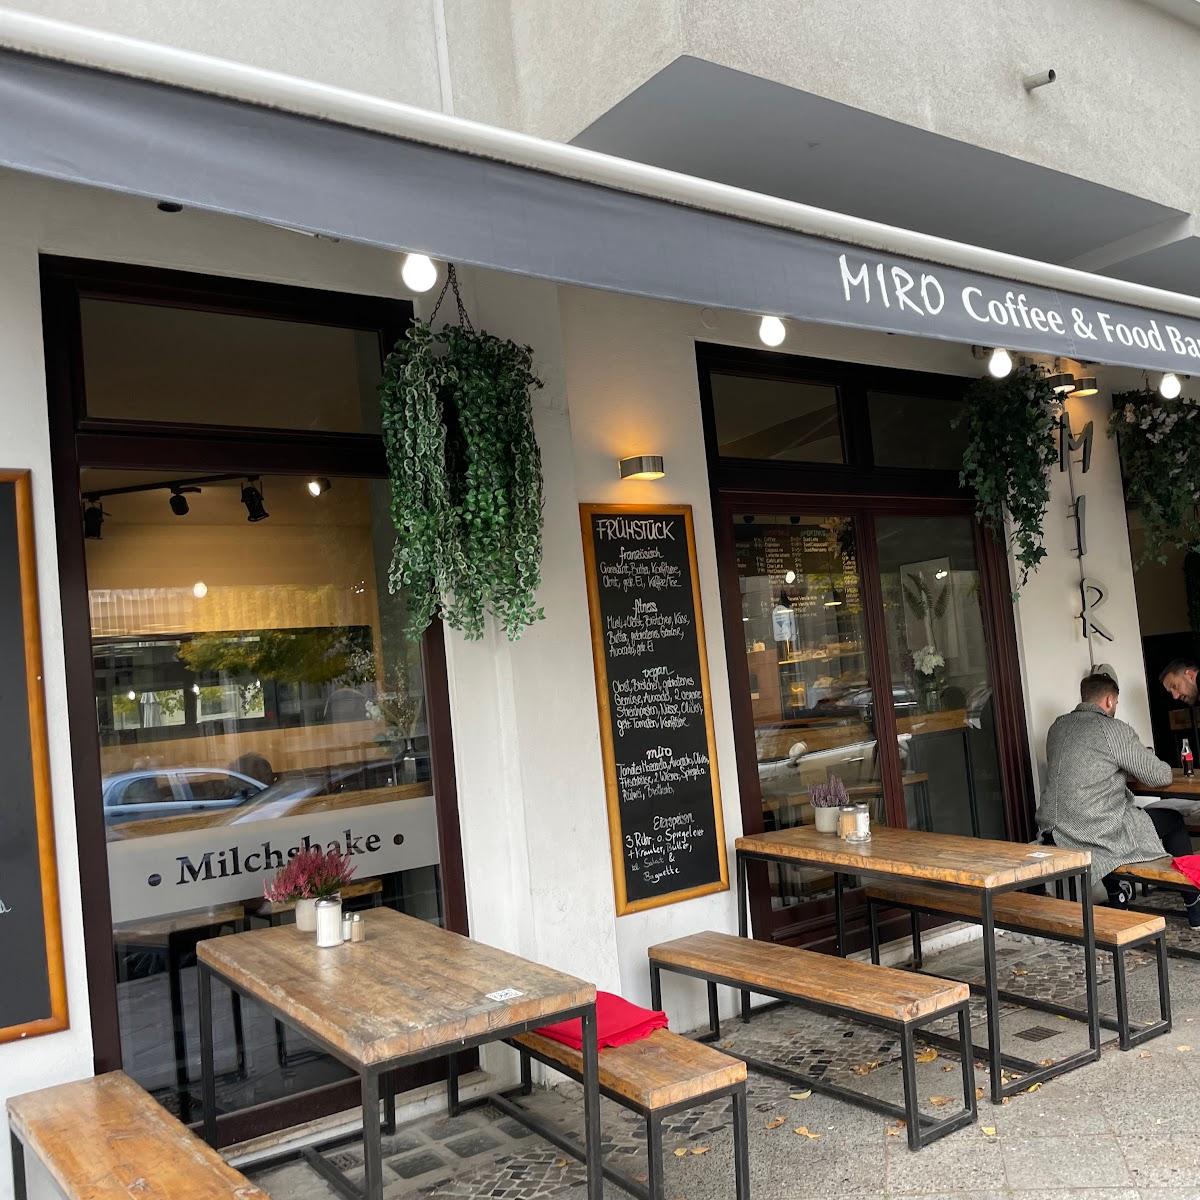 Restaurant "Cafe Miro" in Berlin